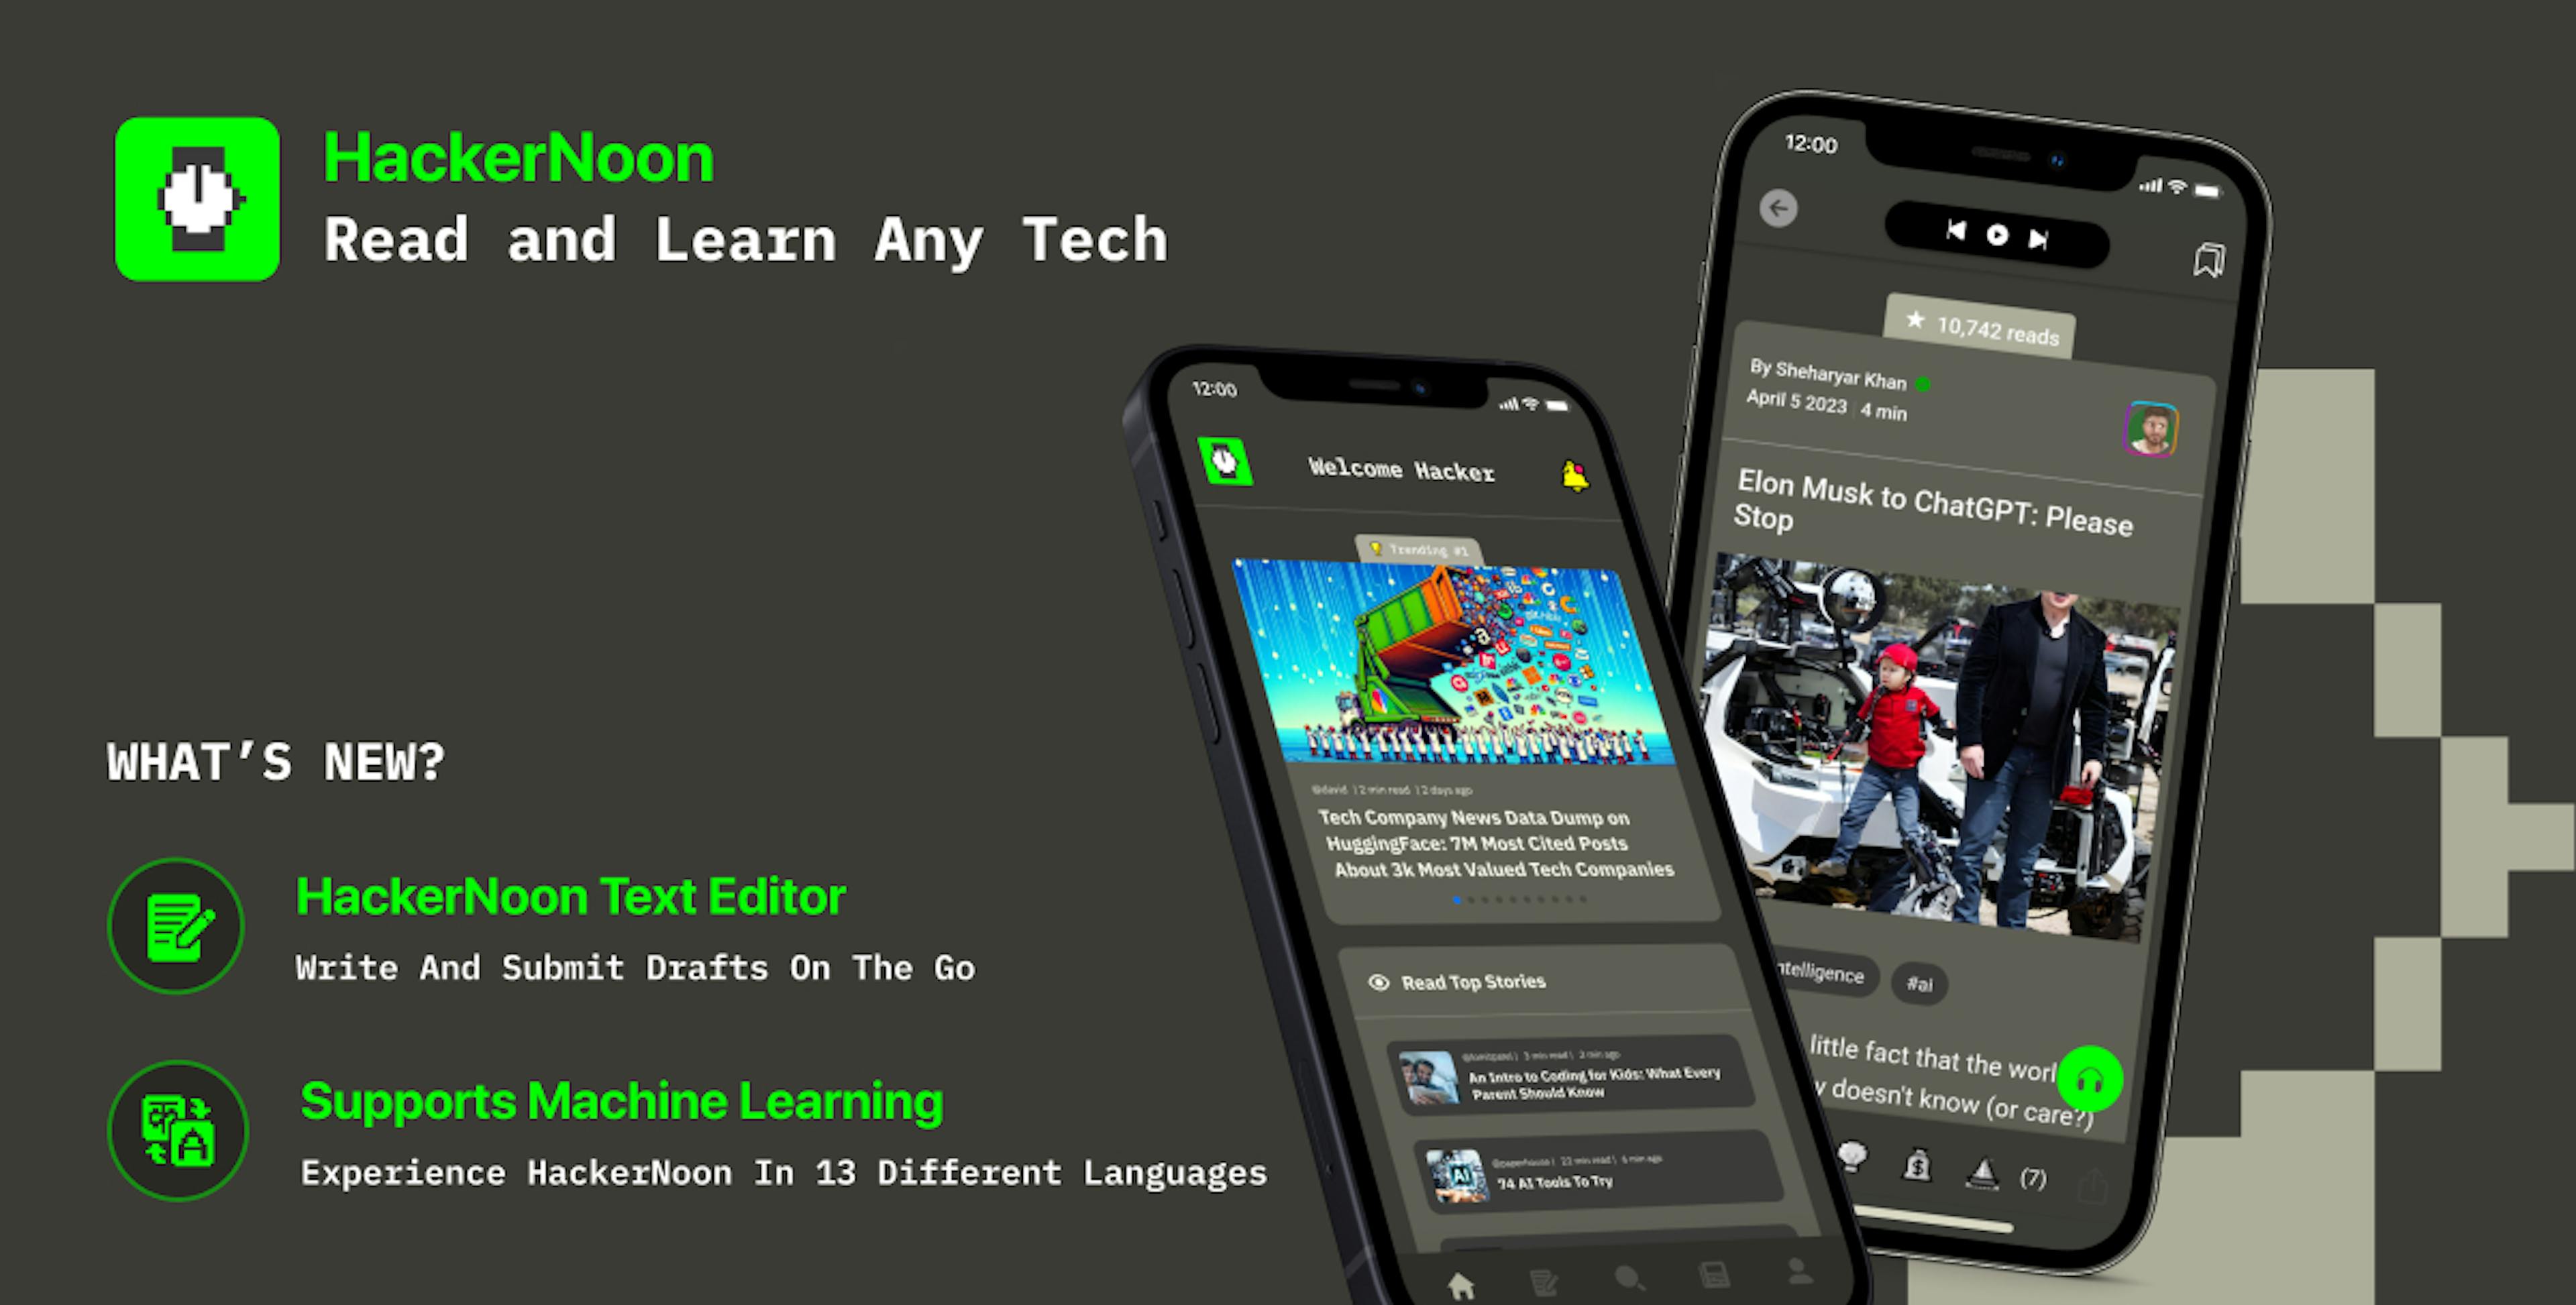 featured image - L'application mobile HackerNoon prend désormais en charge l'écriture dans l'application et 13 langues au total pour lire les blogs techniques